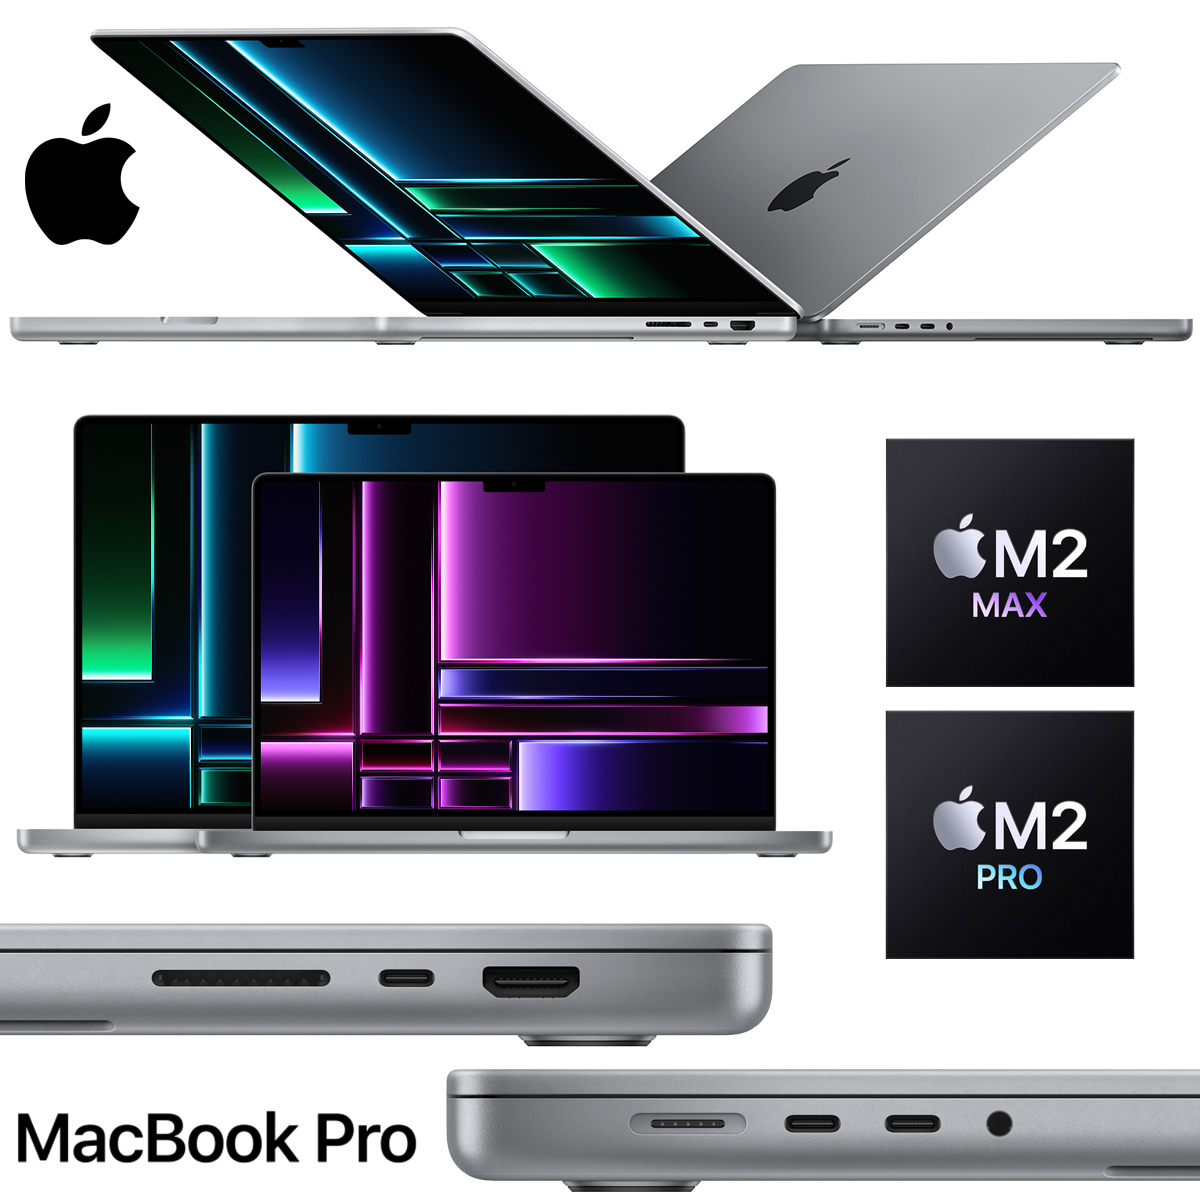 MacBook Pro M2 Max e M2 Pro